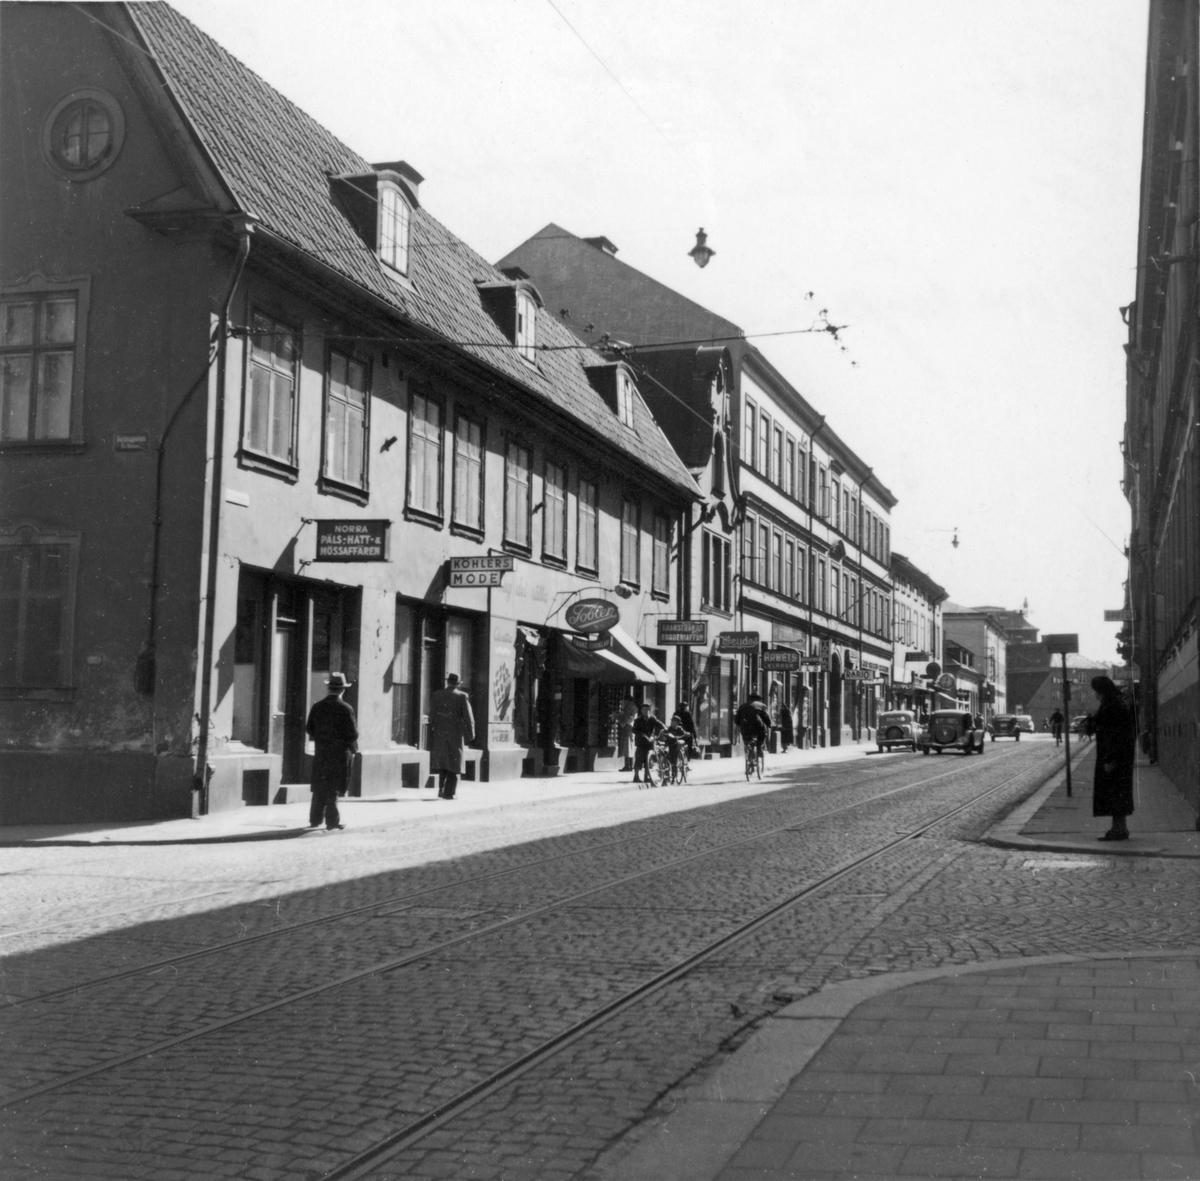 Parti av Kungsgatan i Norrköping. Närmast på vänster sida syns Arnbergska gården med anor från 1700-talet. Sedan följer del av affärsstråket längs Ettans spårvangslinje ner mot Skvallertorget. I fonden skymtar Bergslagsgården. Därbakom sticker taket på Strykjärnet upp som idag rymmer Arbetets museum.

På femtiotalet var Kungsgatans norra del en uttalad affärsgata. Gatan var då uppdelad i norra och västra Kungsgatan med Bergsbron som avdelare. Bland gatans många affärer visar bilden Beckmans Foto, Toblers Frukt och Choklad, Köhlers Mode, Norra Päls - Hatt- & Mössaffären, Granstrands broderiaffär, Weydes, med mera.